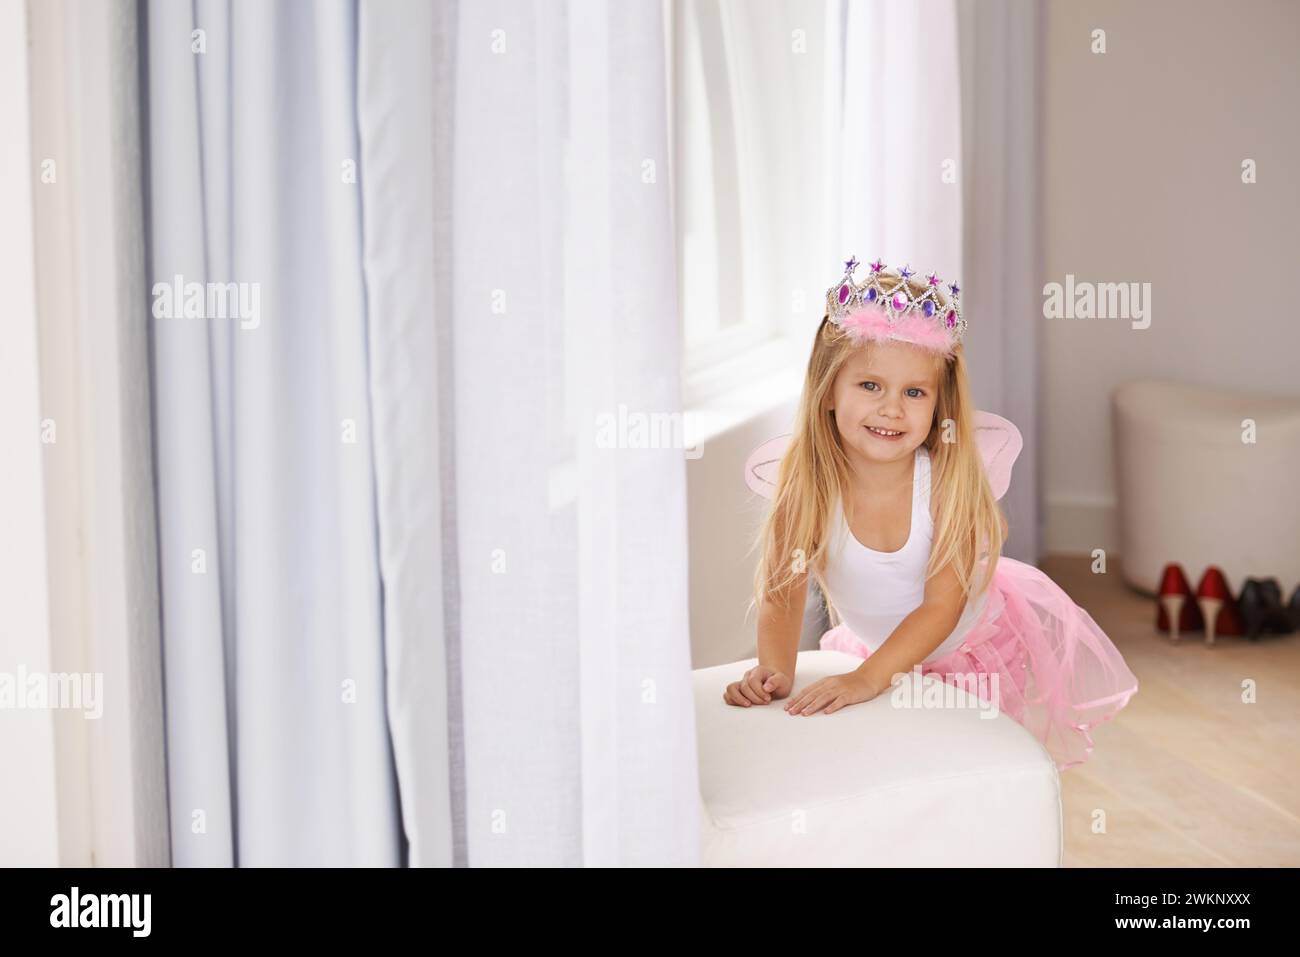 Prinzessin, Kostüm und Porträt eines Mädchens zu Hause, um Spaß zu haben, zu spielen und so zu tun, als ob es ein glückliches Kinderspiel gibt. Fantasie, Mode und Kind in kreativer Feenfantasie Stockfoto